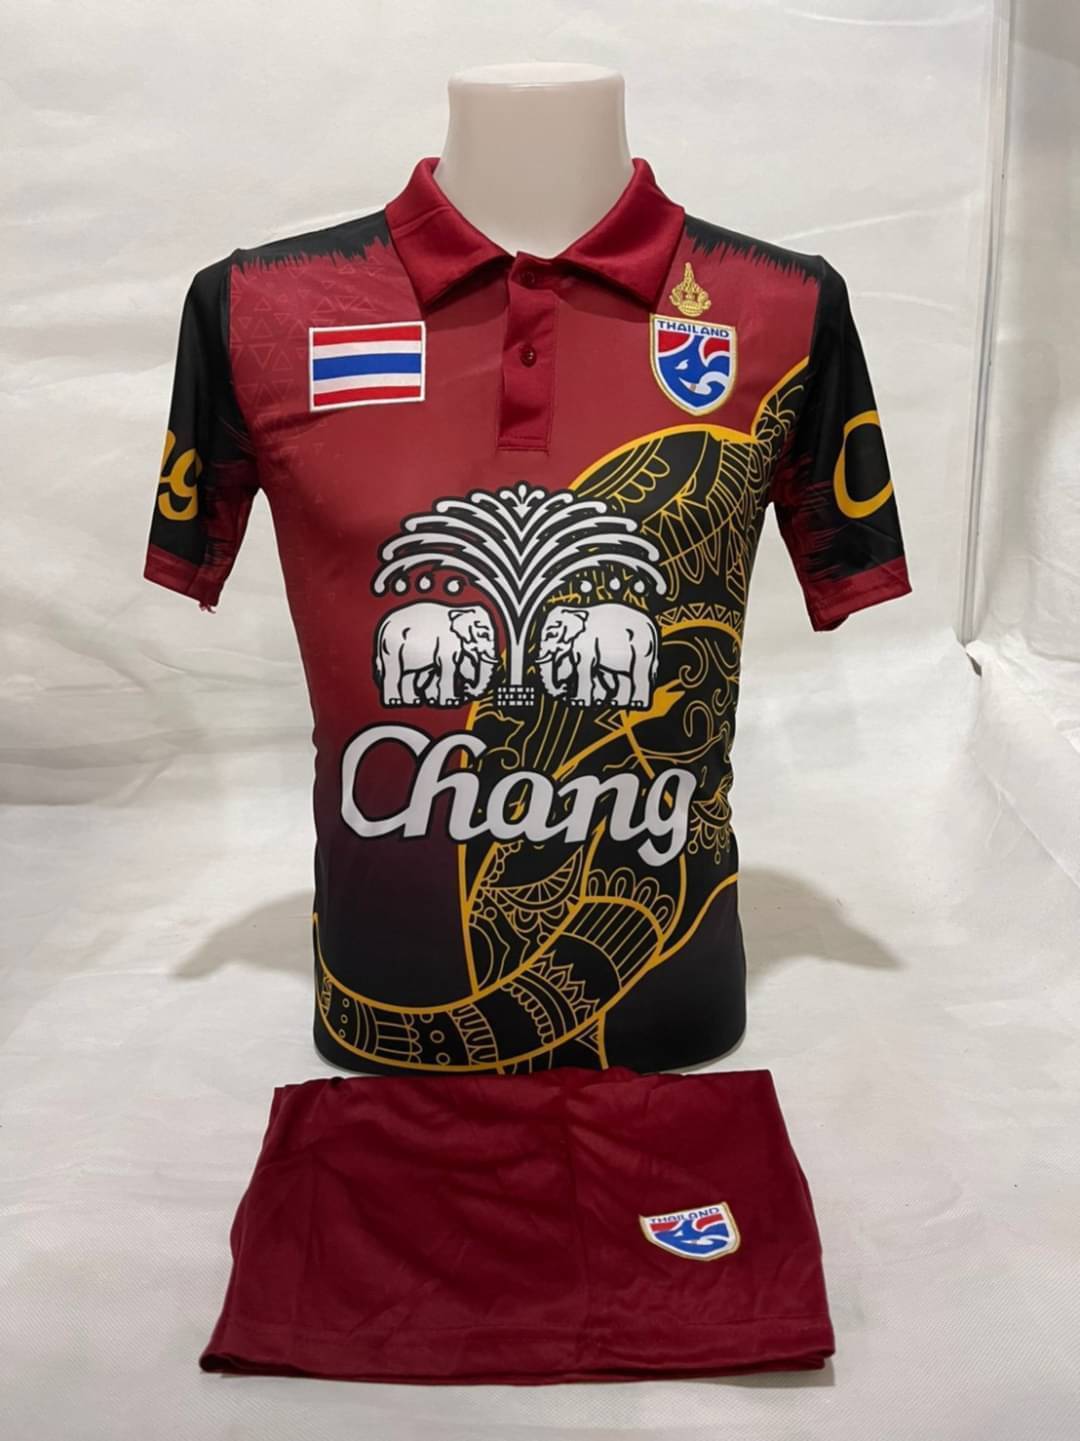 เสื้อกีฬา ชุดกีฬาผู้ชาย ทีมชาติไทย ลายช้าง Free Fire 2021/2022 ถูกคุ้มสุดๆ (เสื้อ+กางเกง)